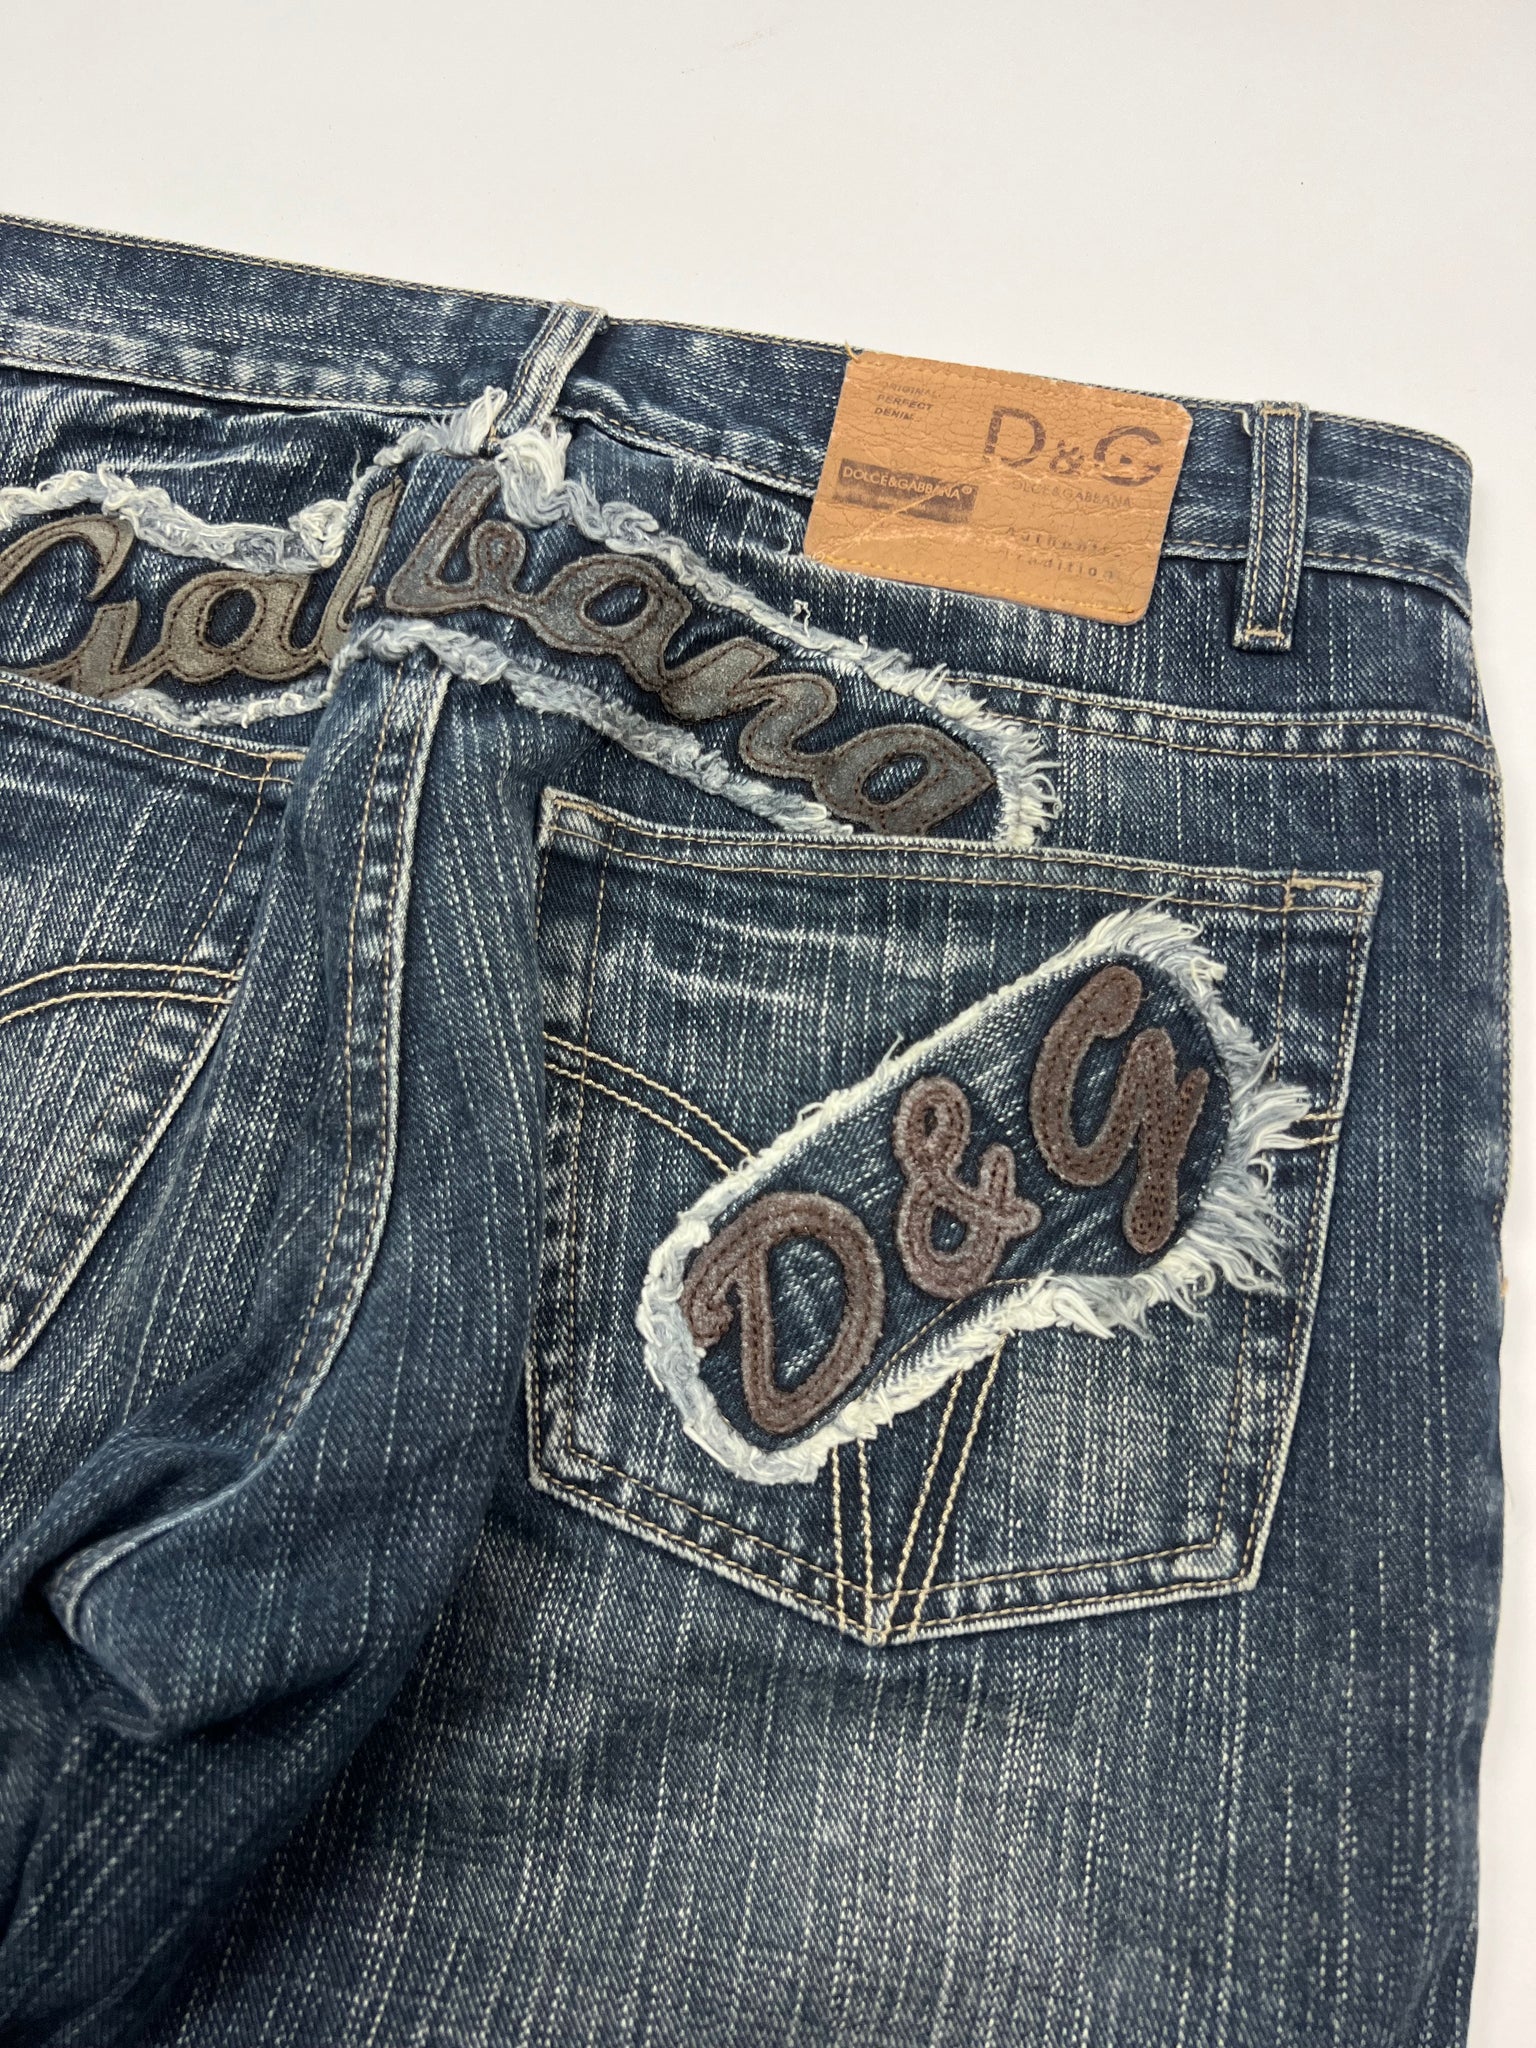 Dolce & Gabbana Jeans (31)